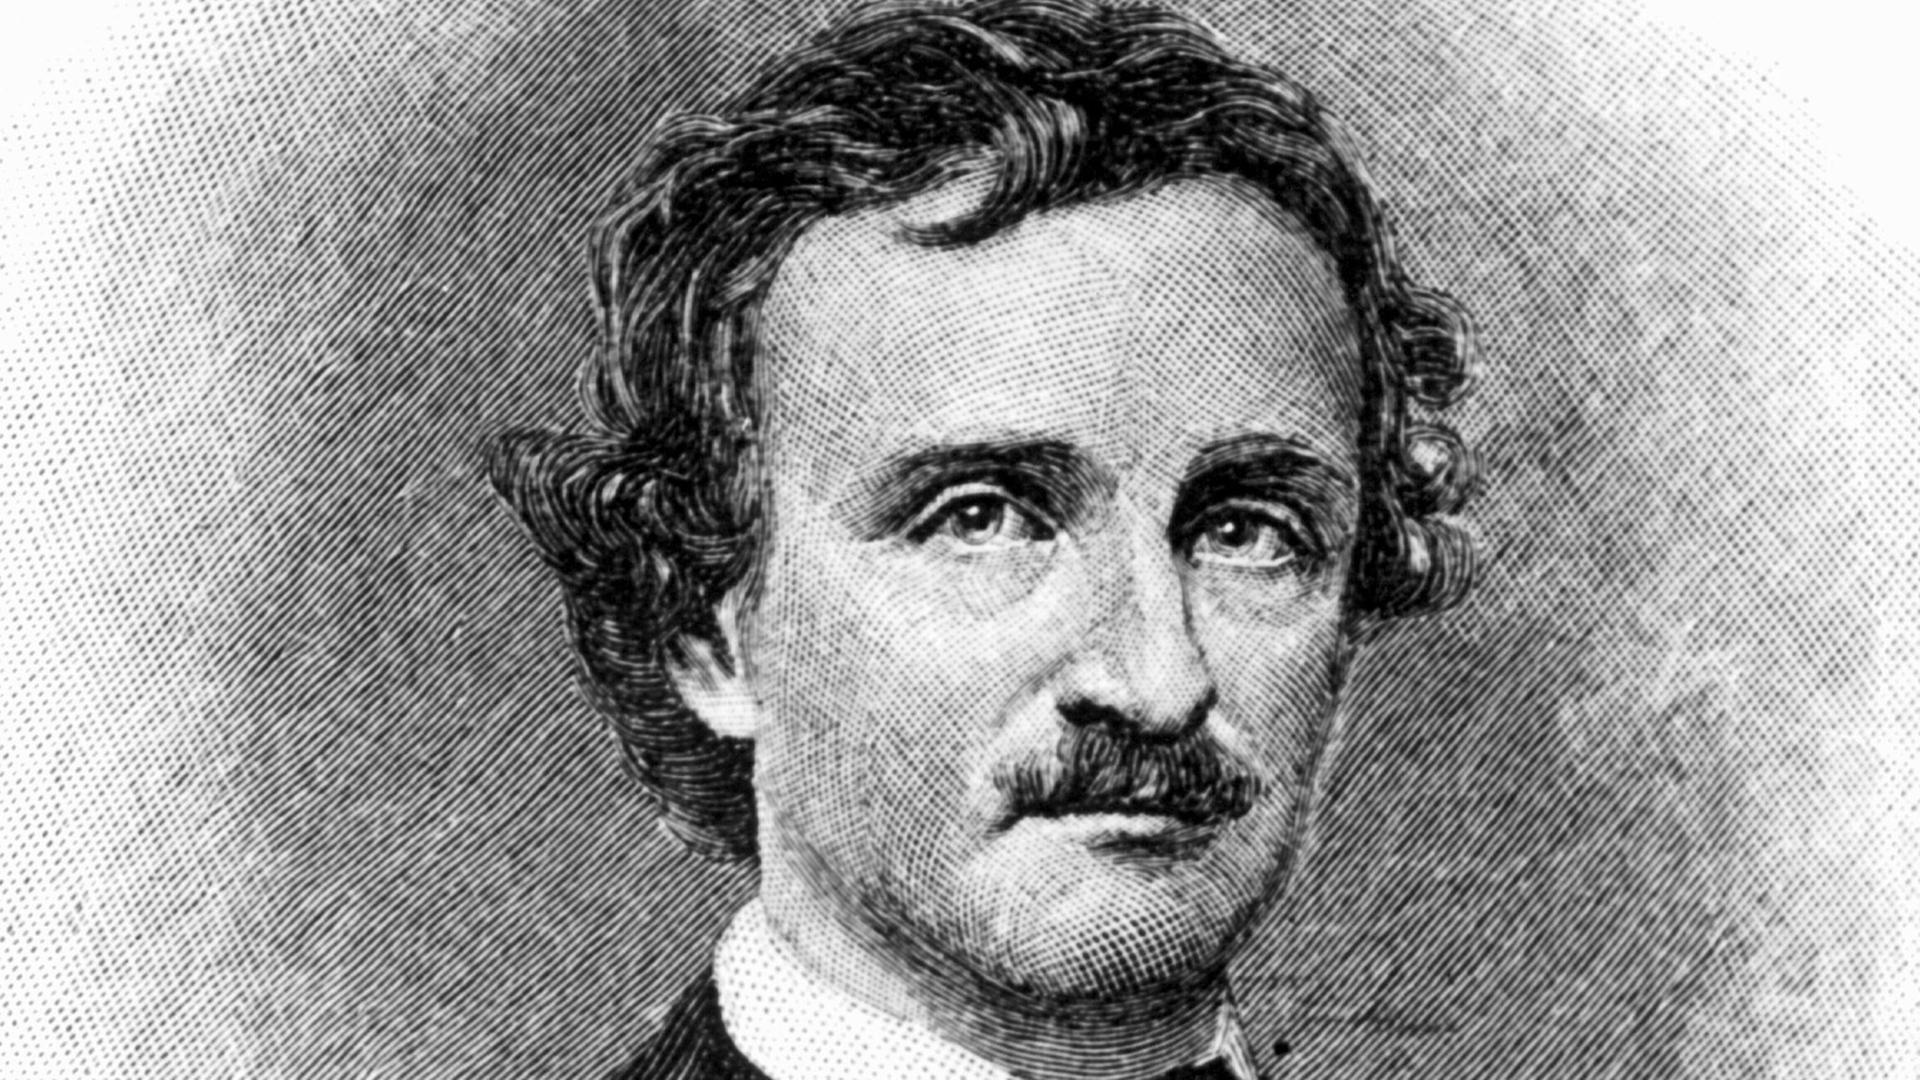 Der amerikanische Schriftsteller und Meister der Kriminalerzählung (u.a. "Der Doppelmord in der Rue Morgue") in einer zeitgenössischen Darstellung. Edgar Allan Poe wurde am 19. Januar 1809 in Boston geboren und ist am 7. Oktober 1849 in Baltimore gestorben.